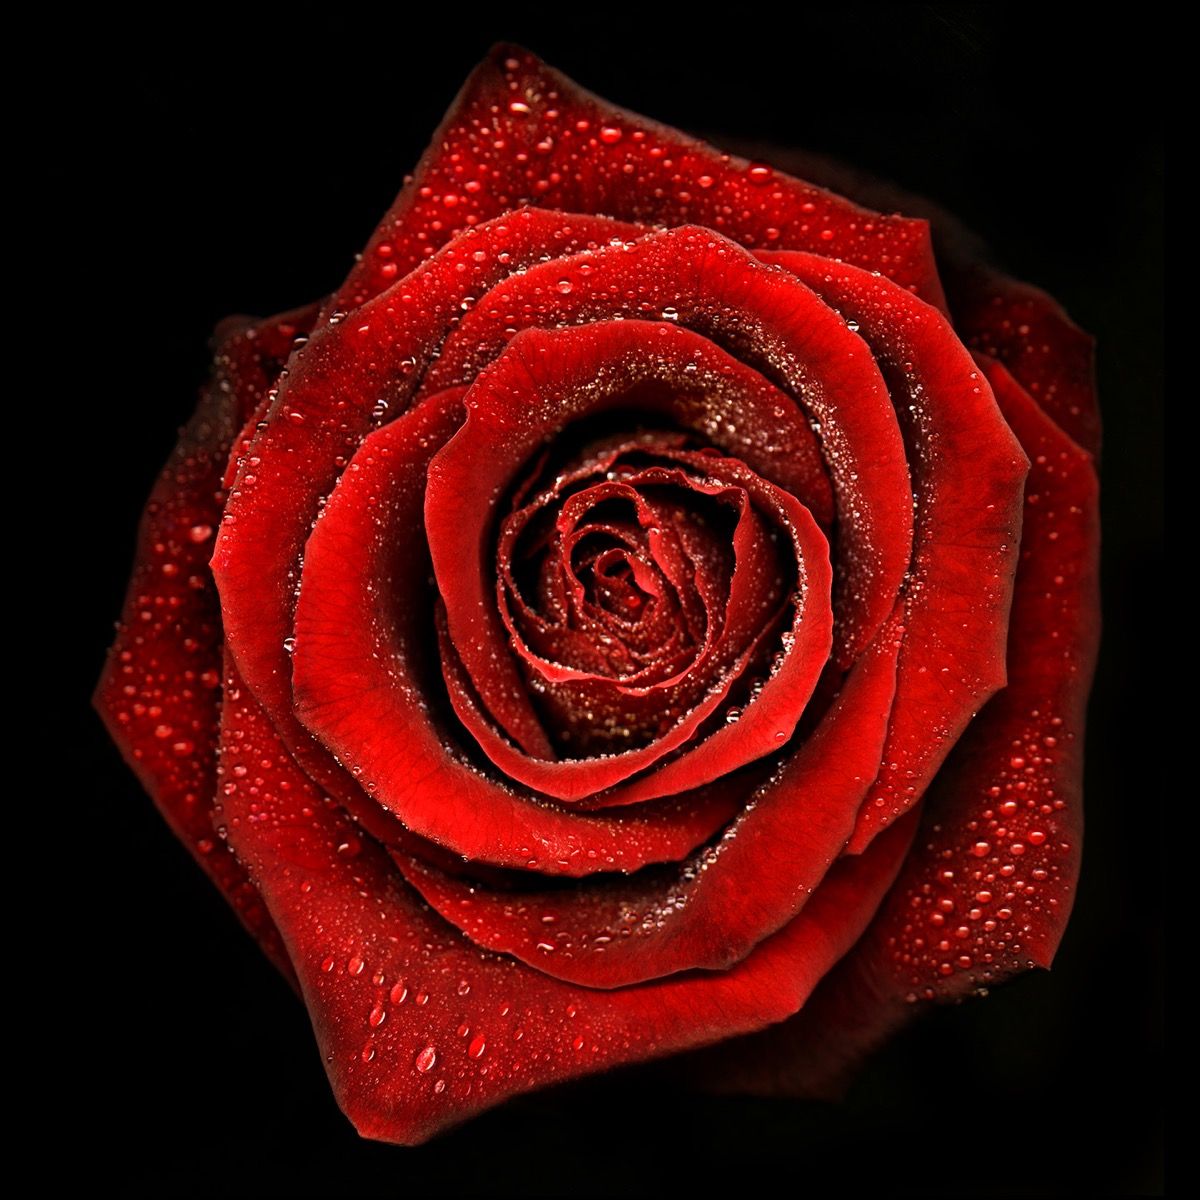 Rose N°2 by Allan Forsyth